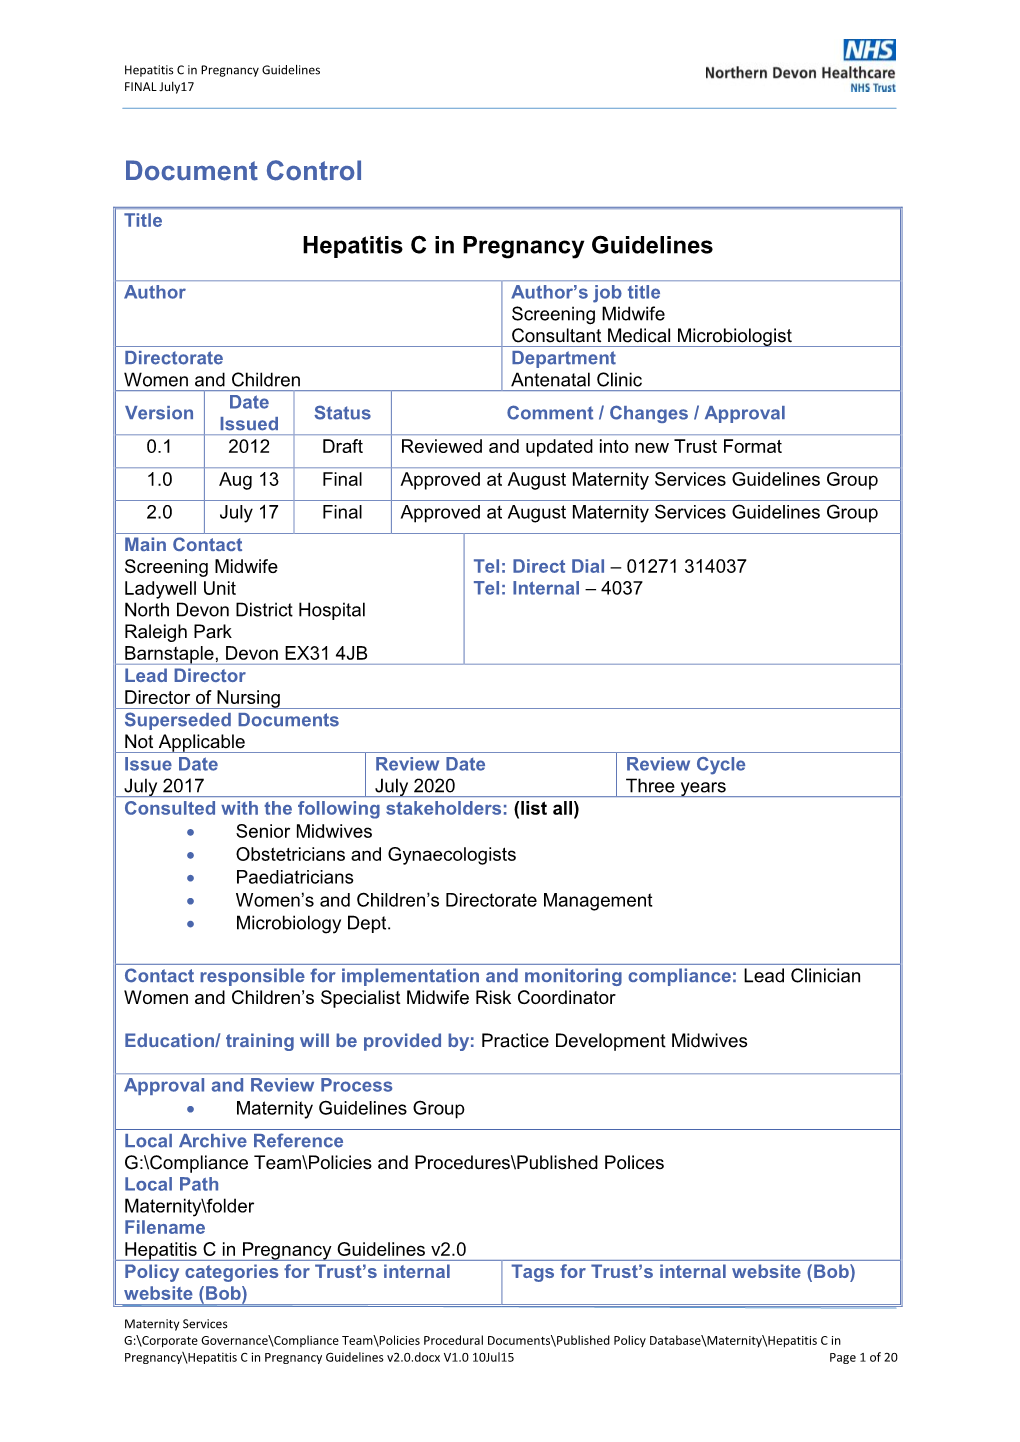 Hepatitis C in Pregnancy Guidelines FINAL July17